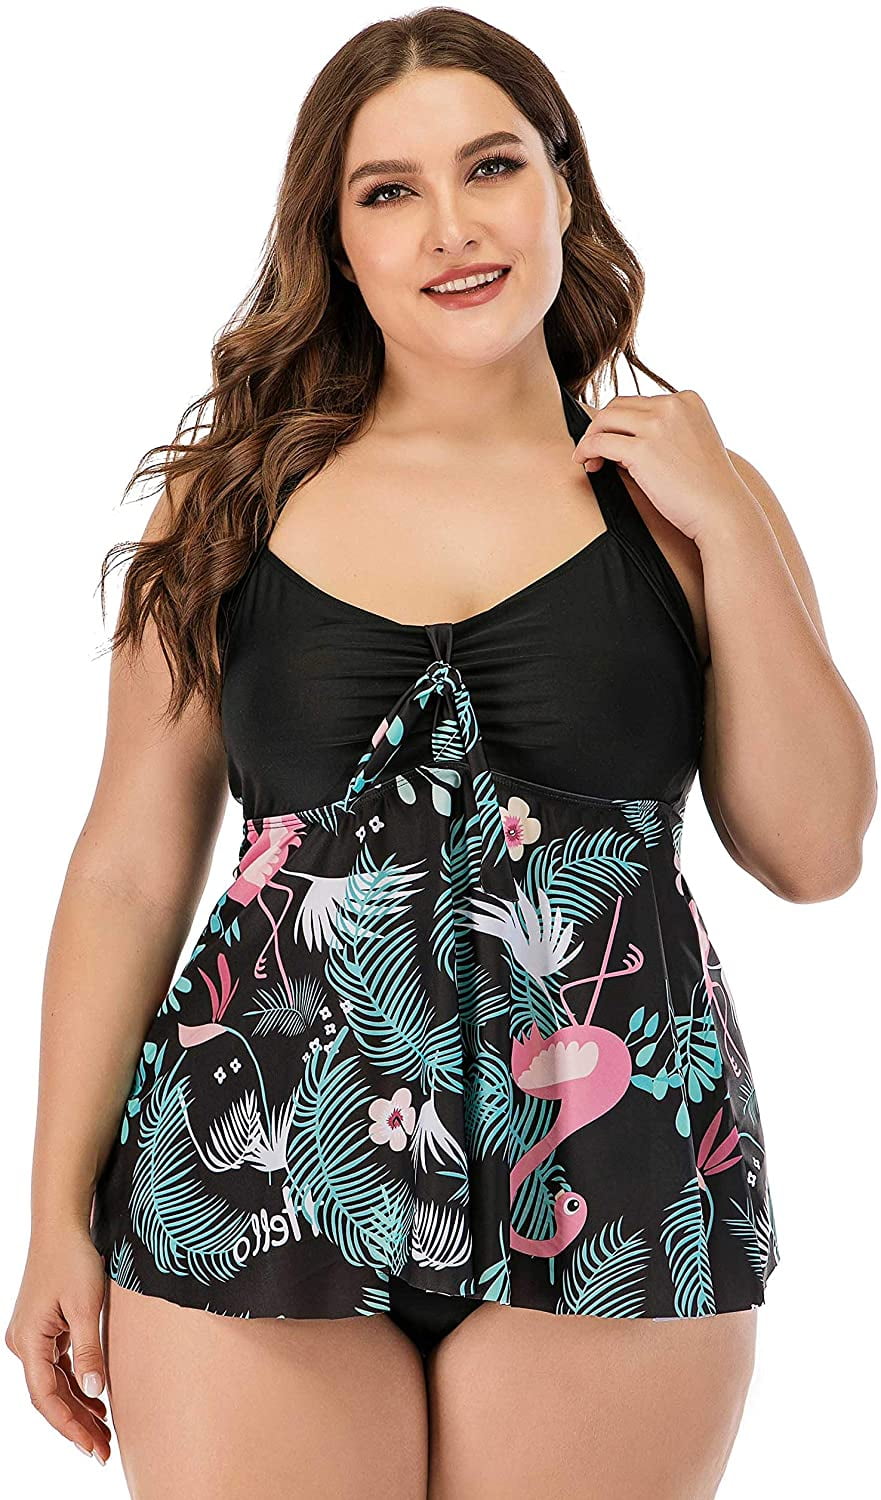 Plus Size Swimsuit for Women Two Piece Tankini Bathing Suit Swimwear ...